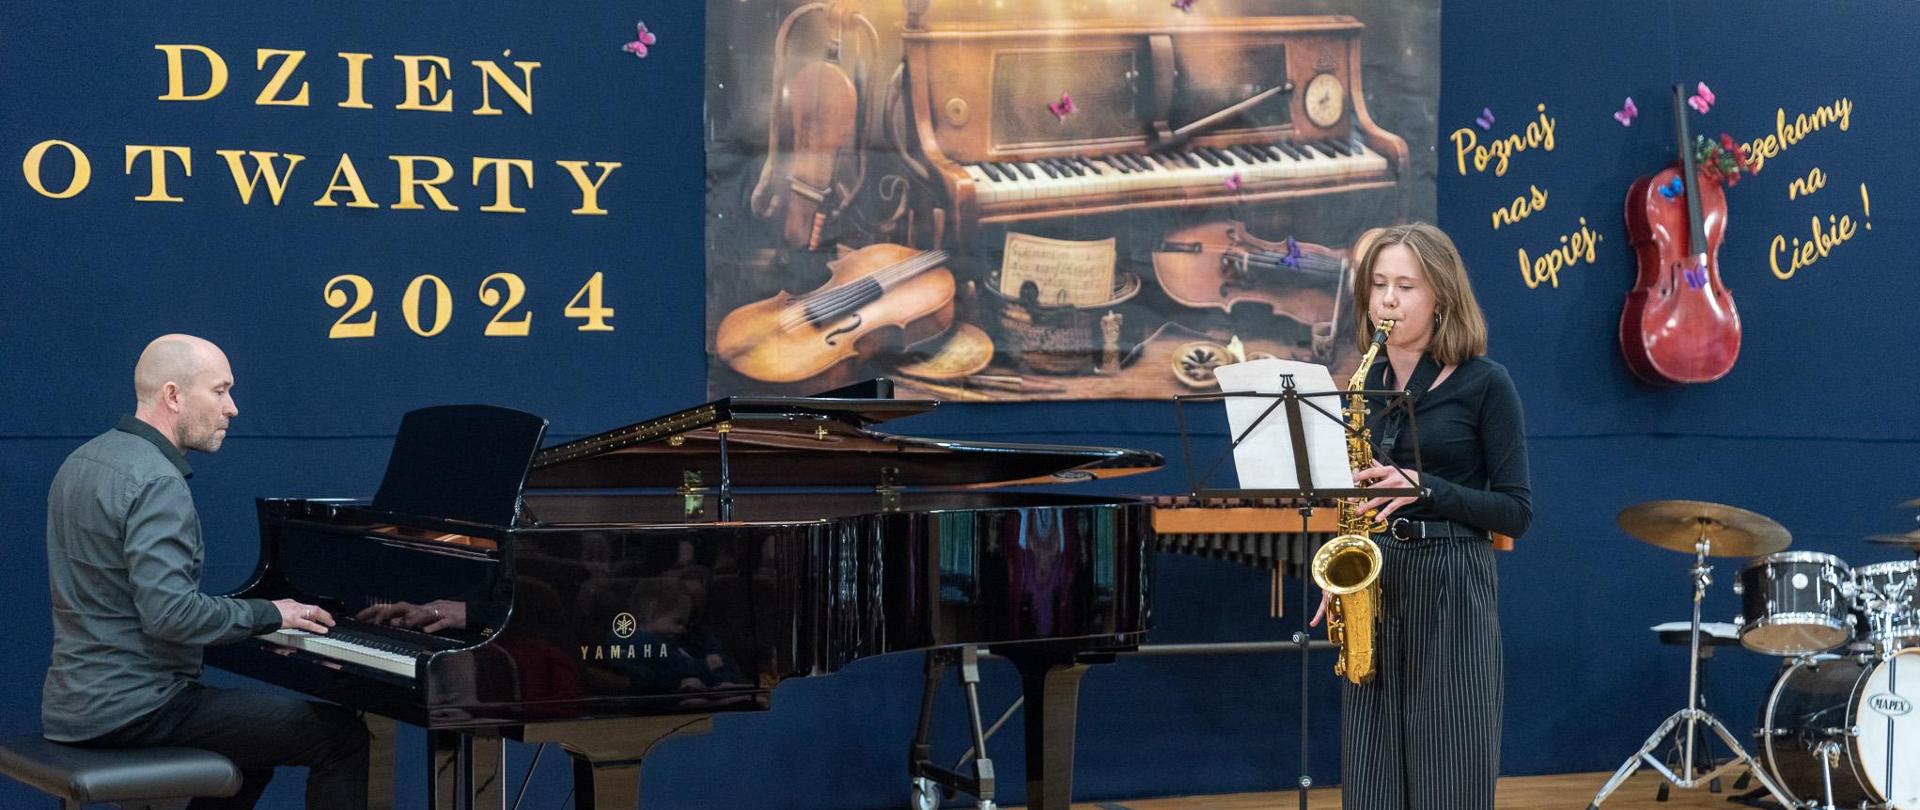 Na scenie saksofonistka gra i pianista jej akompaniuje. W tle napis "Dzień Otwarty 2024" i wisząca wiolonczela na ścianie.